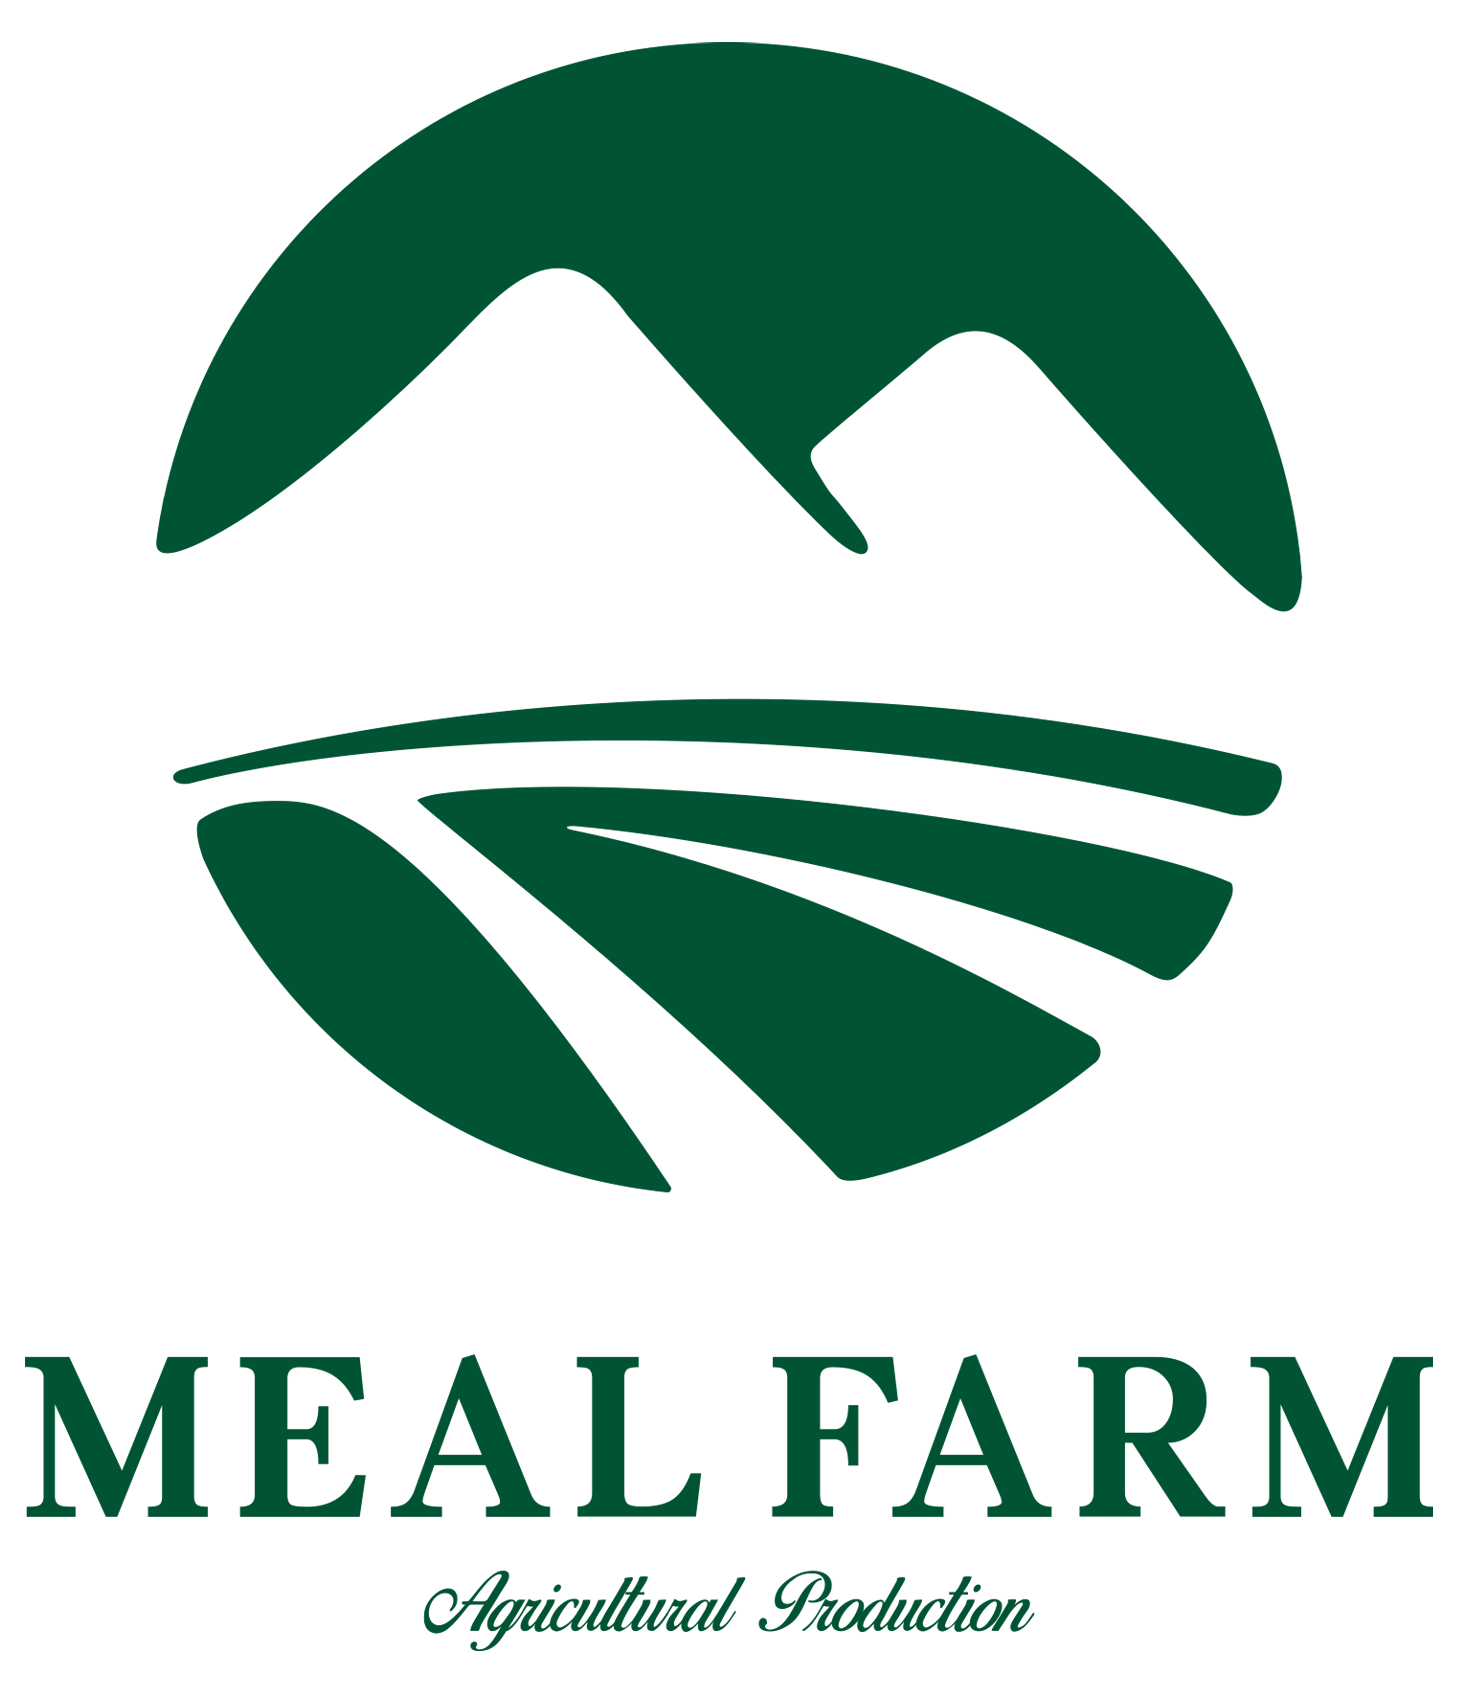 MEAL FARM